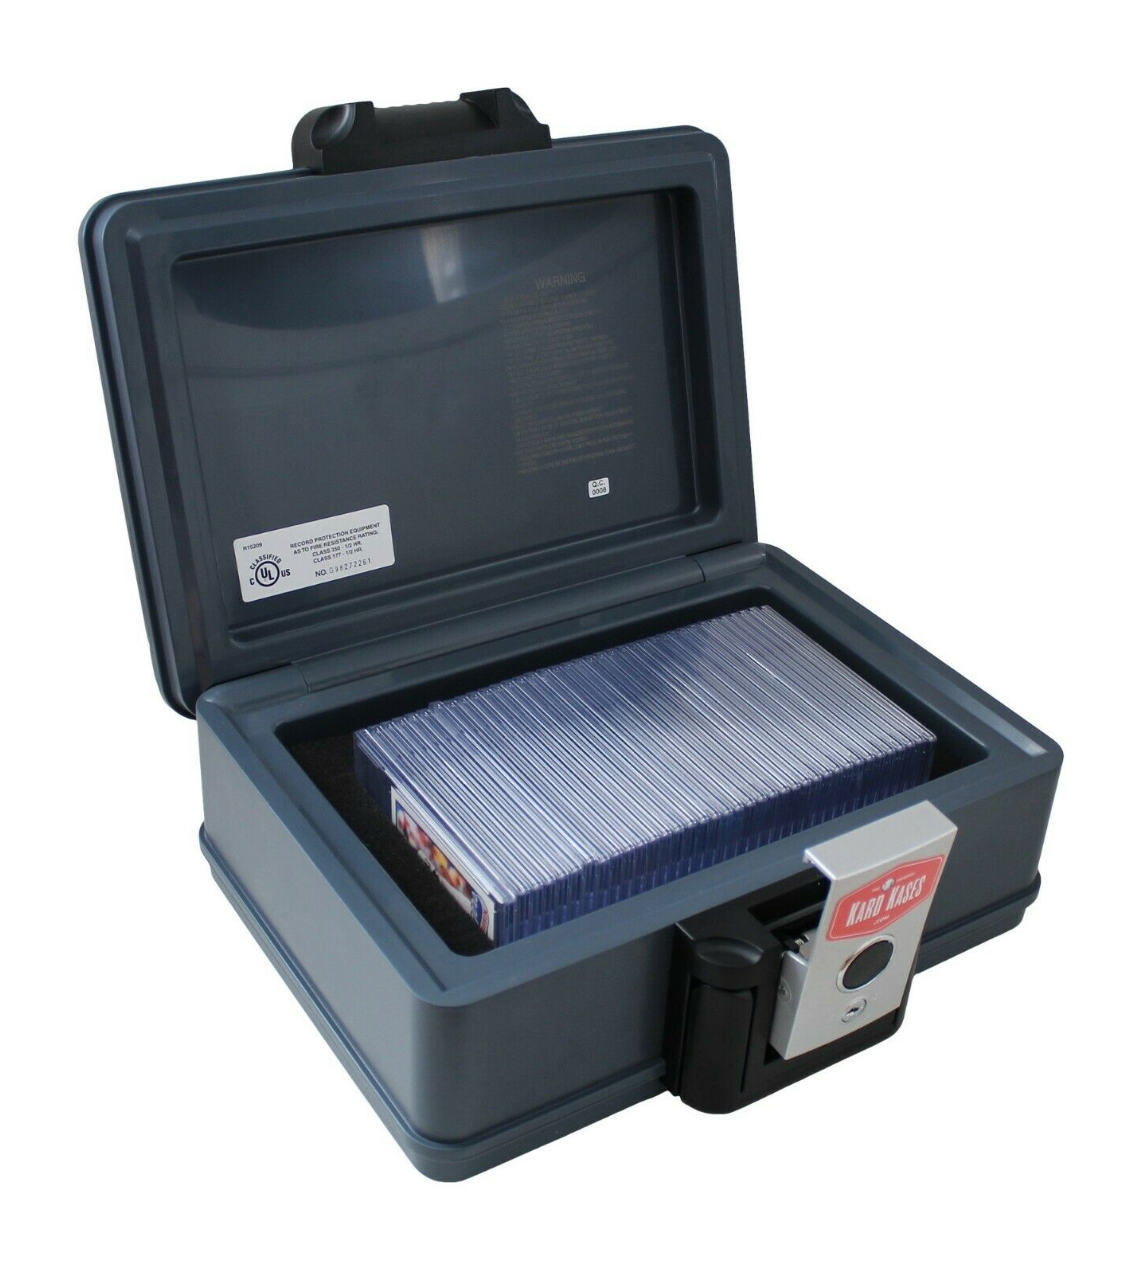 Fireproof Graded Card Slab Storage Box Case Holder Fits PSA - KardKases